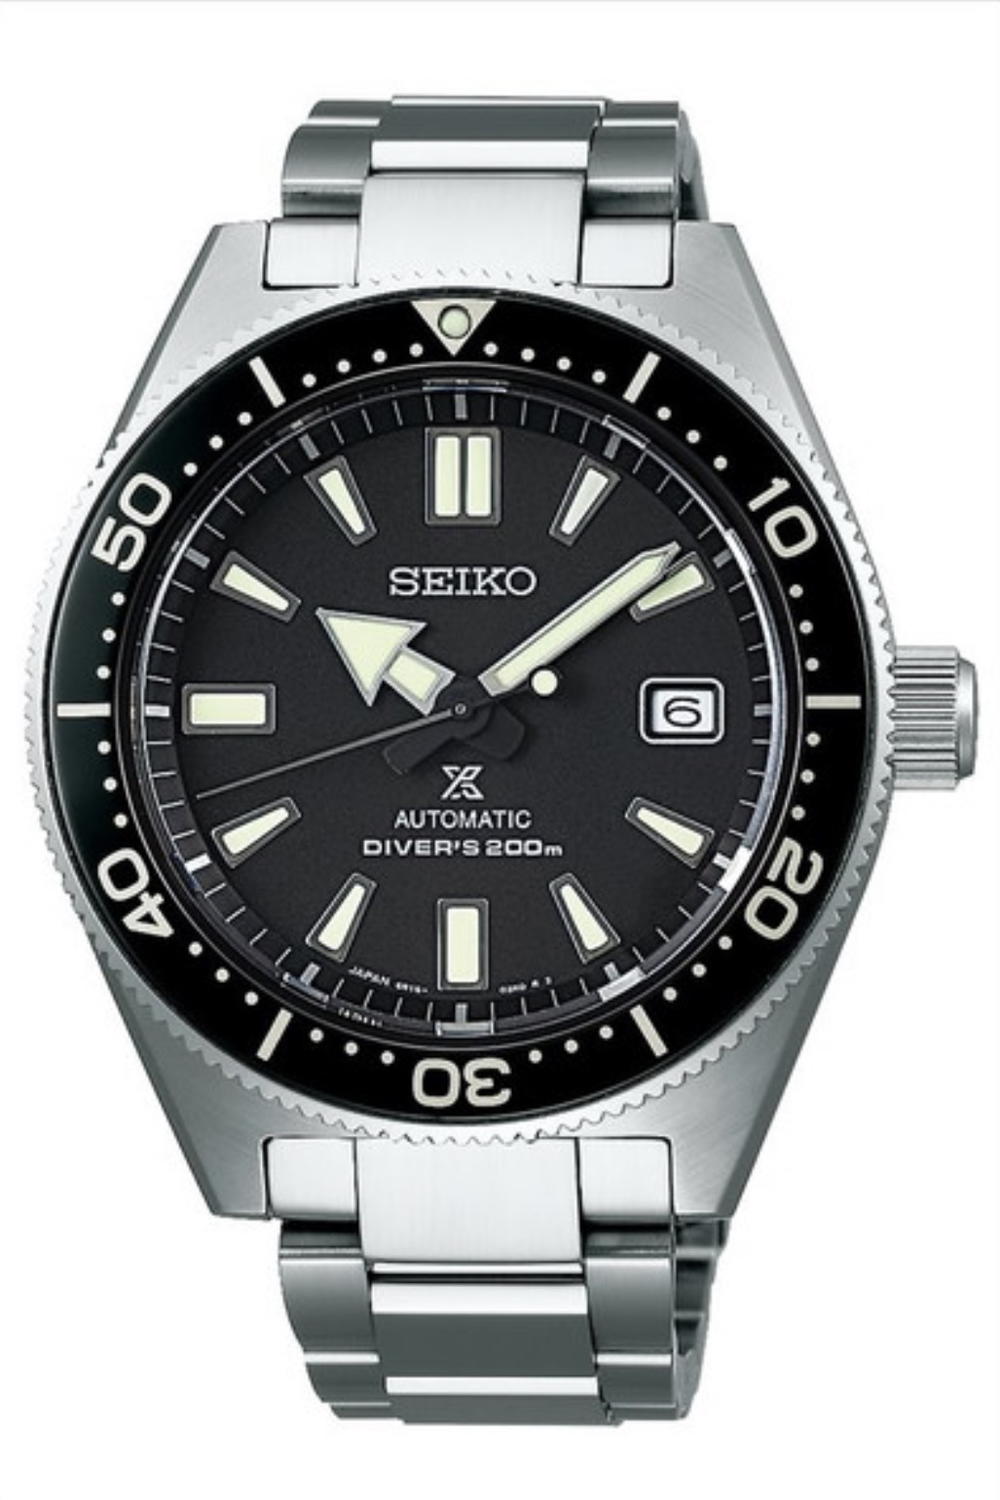 Watch Brands 101: Seiko Watches 